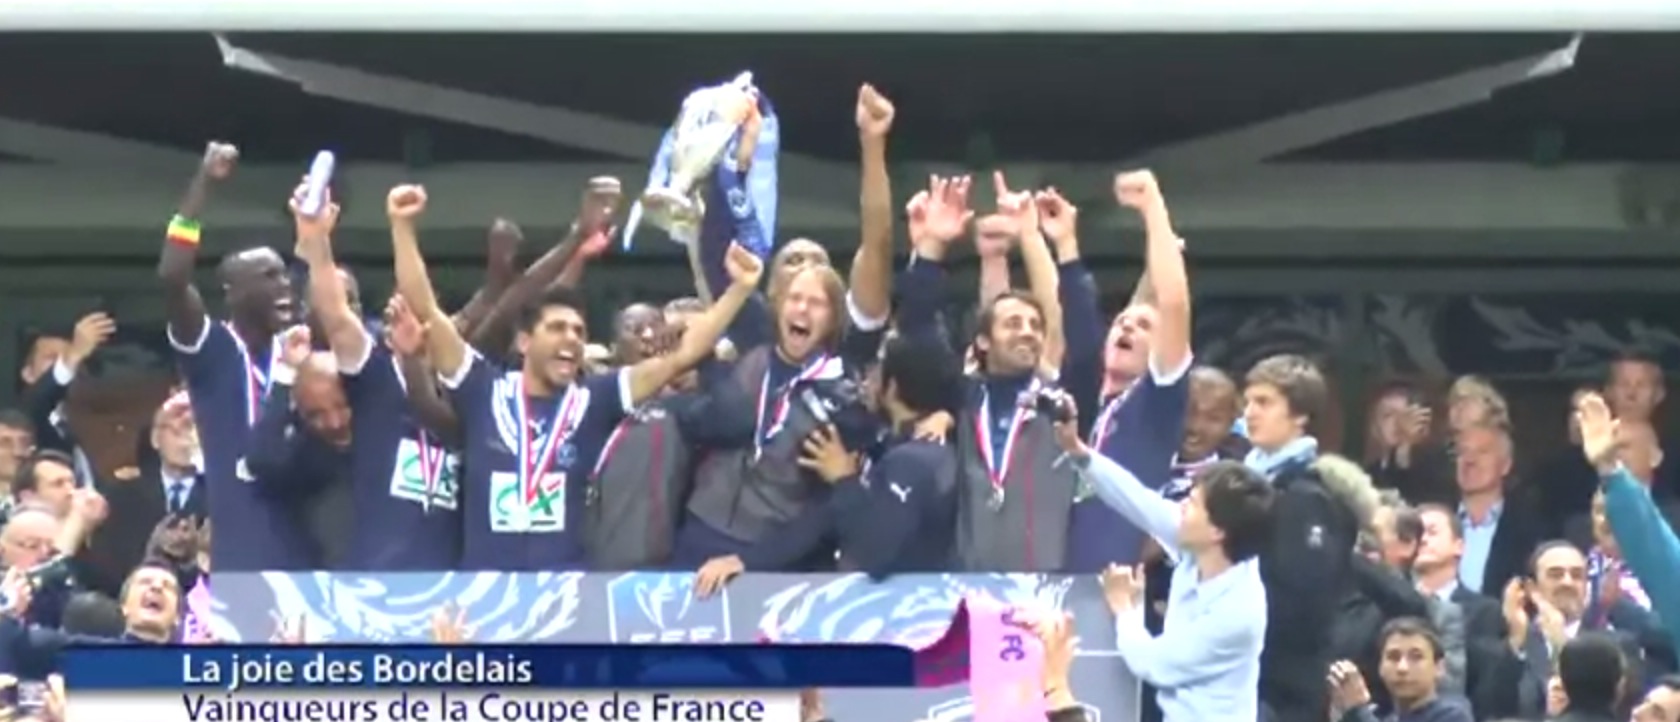 Bordeaux vainqueur Coupe de France 2013